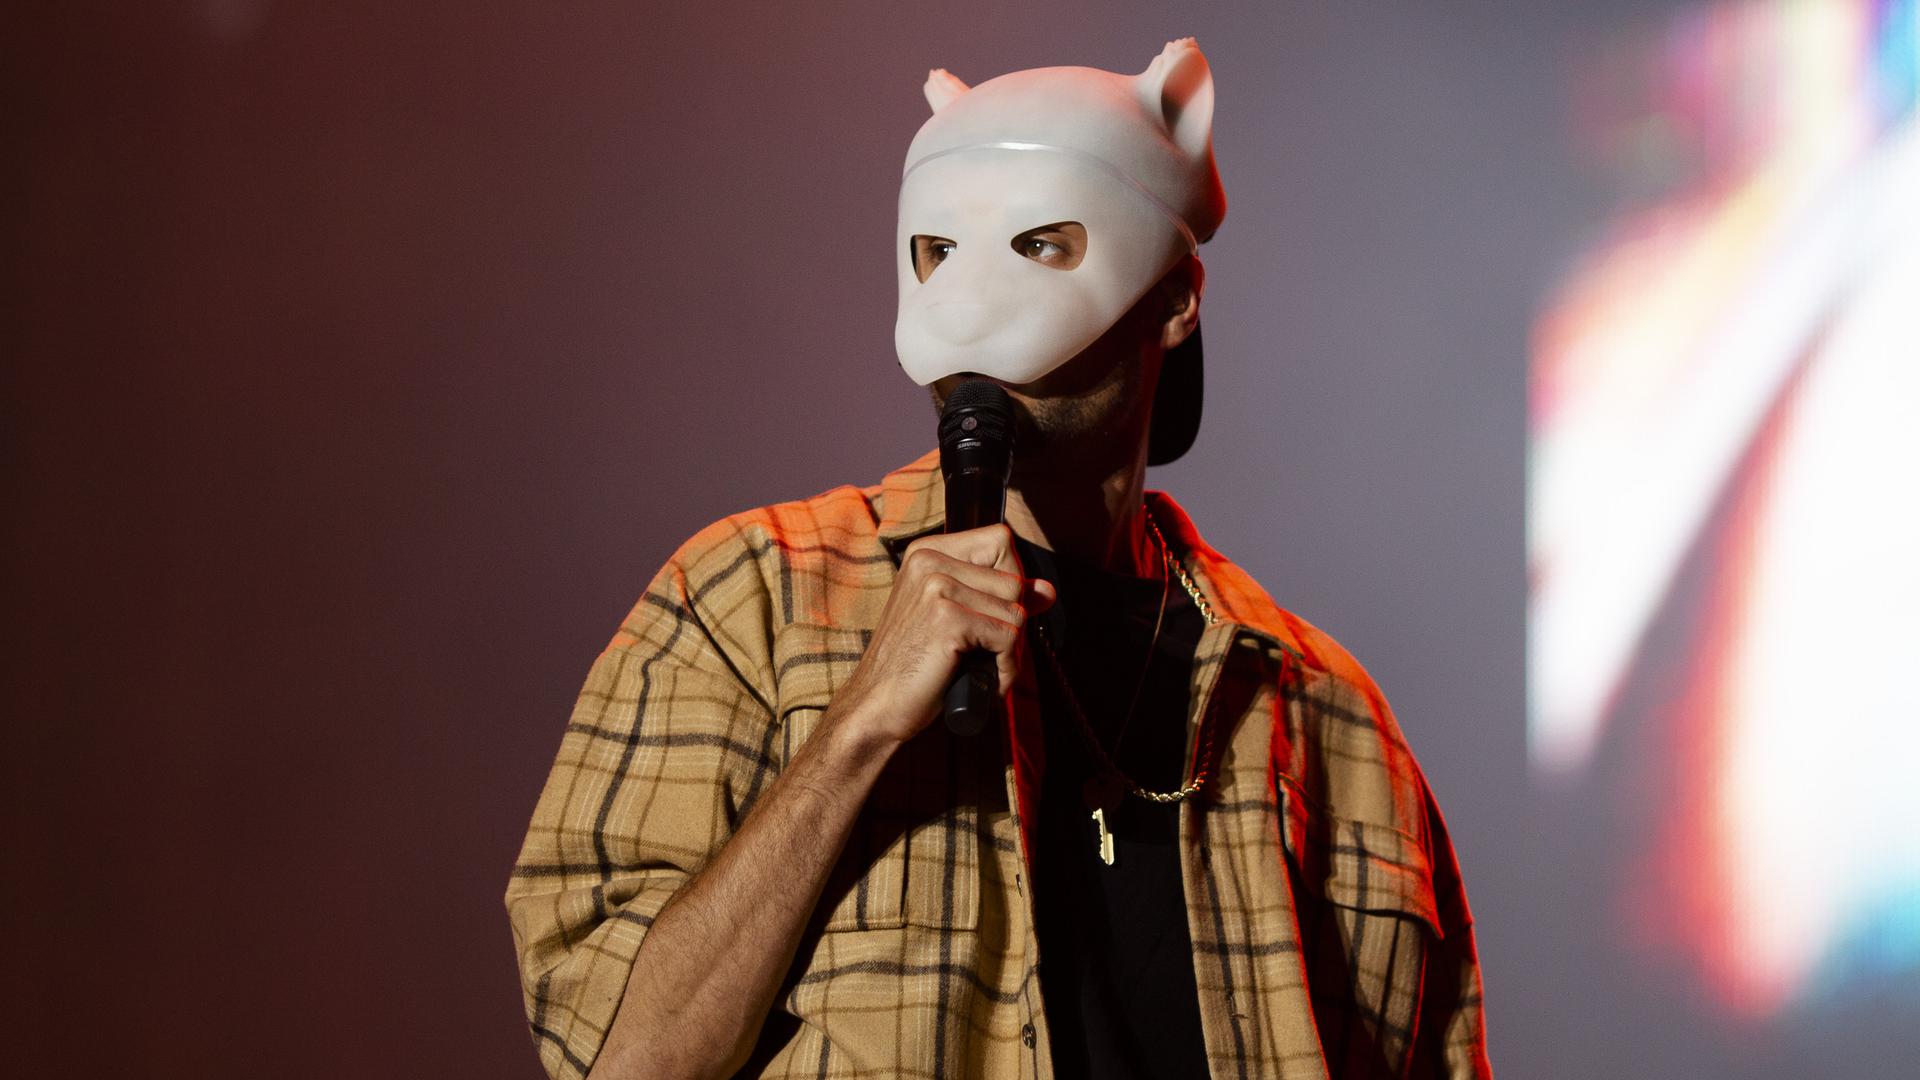 Sänger Cro mit seinem Markenzeichen, einer weißen Maske, hinter der er sein Gesicht verbirgt.